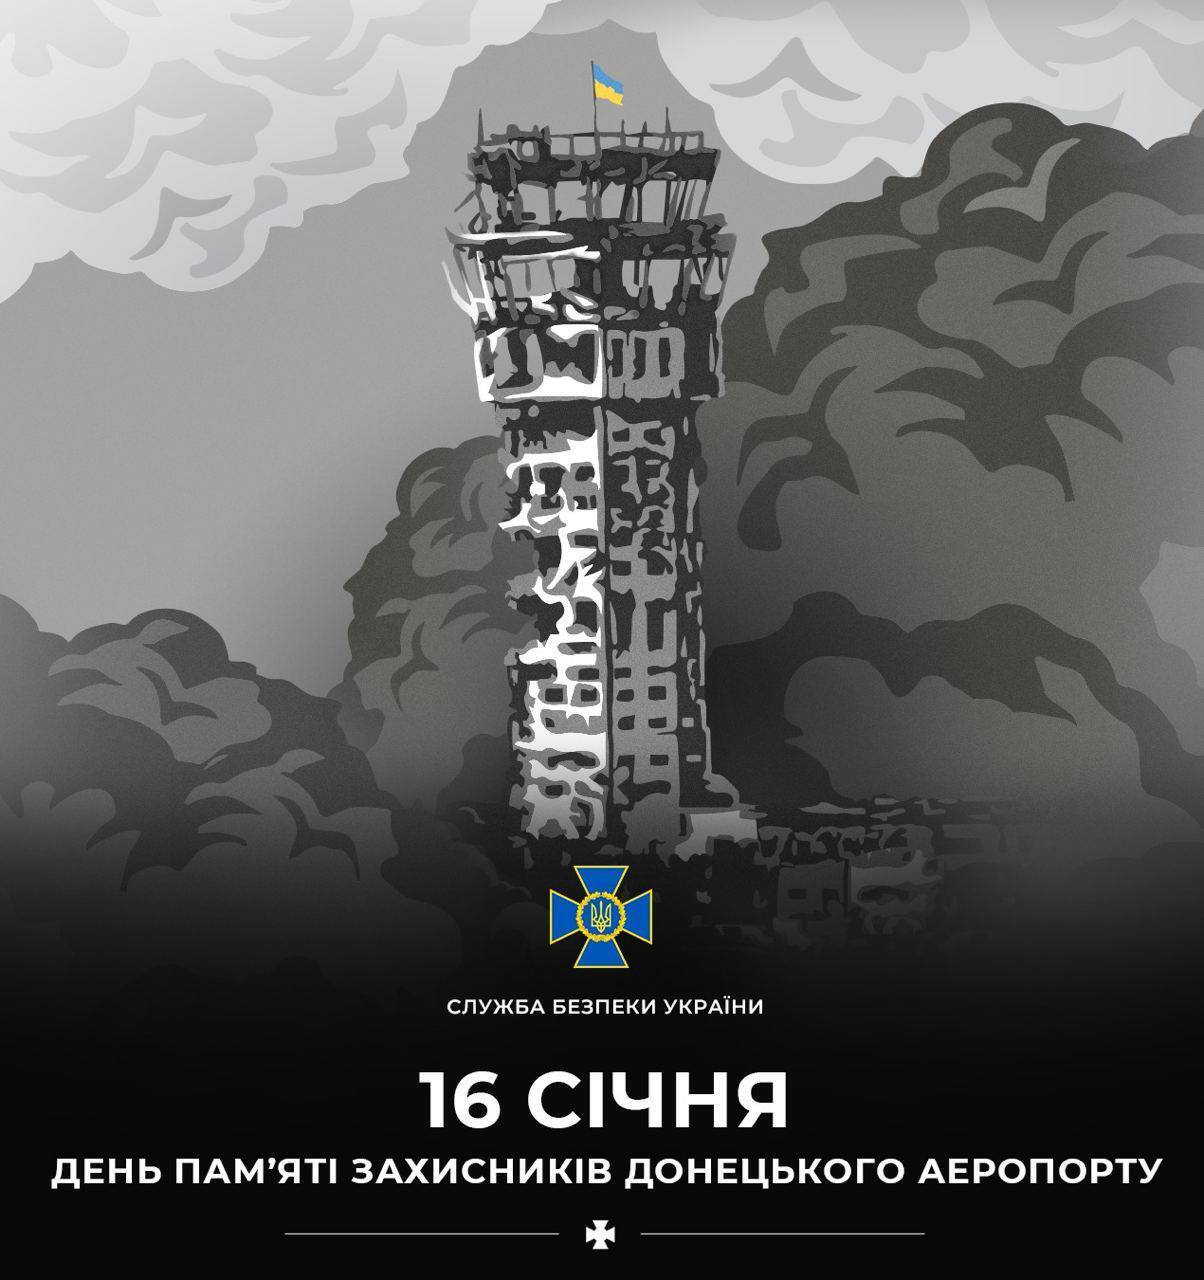 "Люди выстояли, не выдержал бетон": в Украине 20 января чтят память защитников Донецкого аэропорта